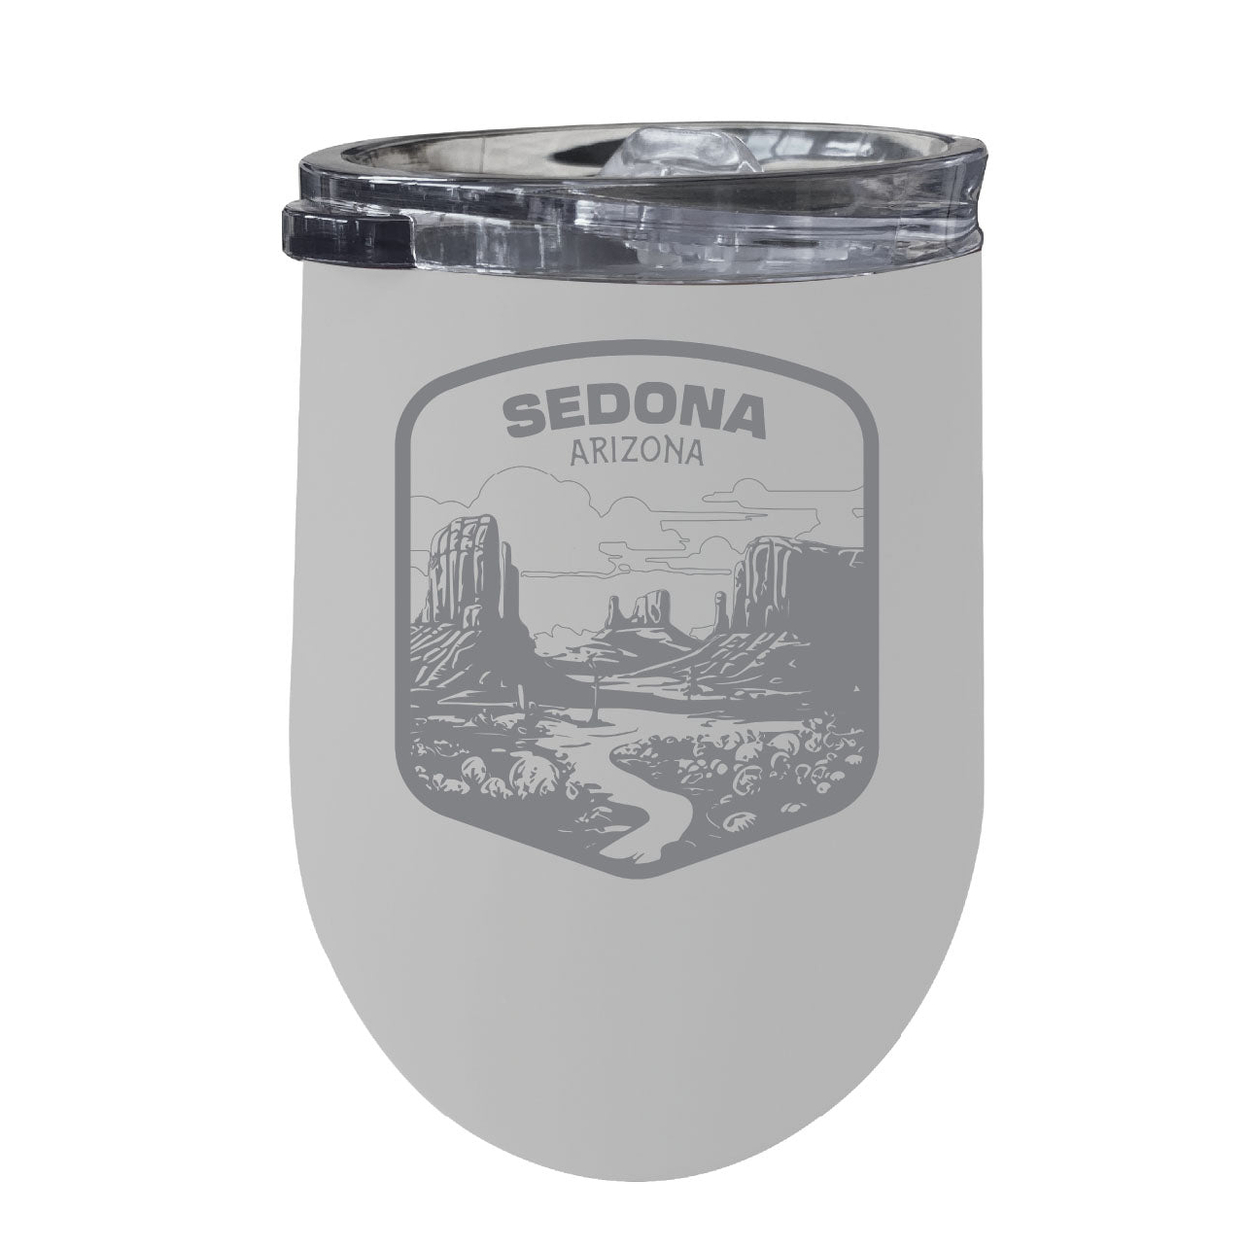 Sedona Arizona Souvenir 12 Oz Engraved Insulated Wine Stainless Steel Tumbler - White,,Single Unit